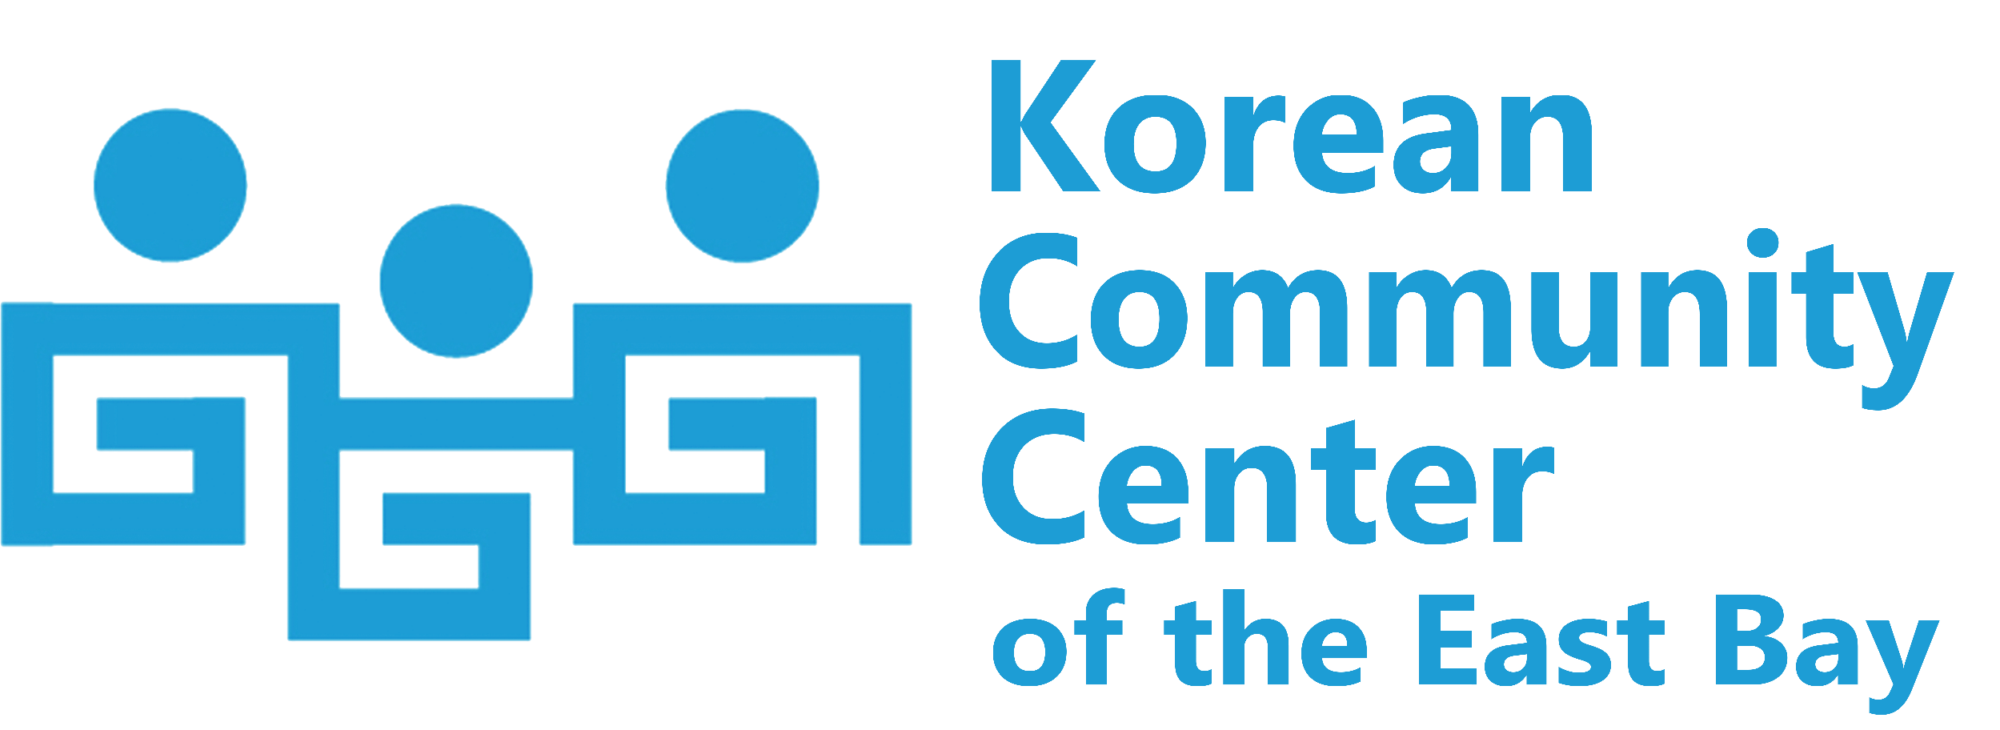 Korean Community Center of the East Bay